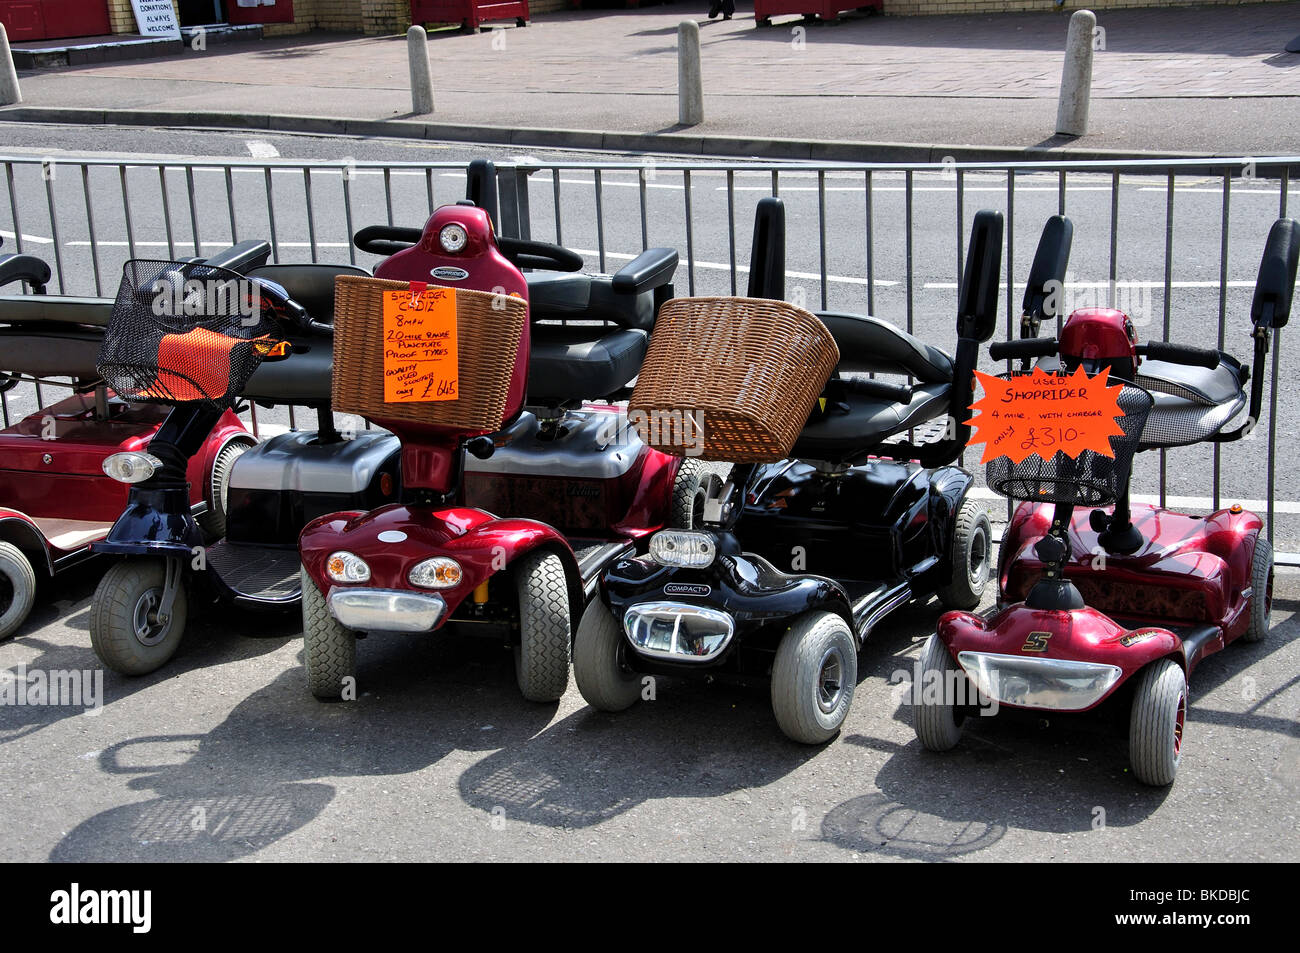 Les scooters de mobilité pour la vente, l'Arcade, Bognor Regis, West Sussex, Angleterre, Royaume-Uni Banque D'Images